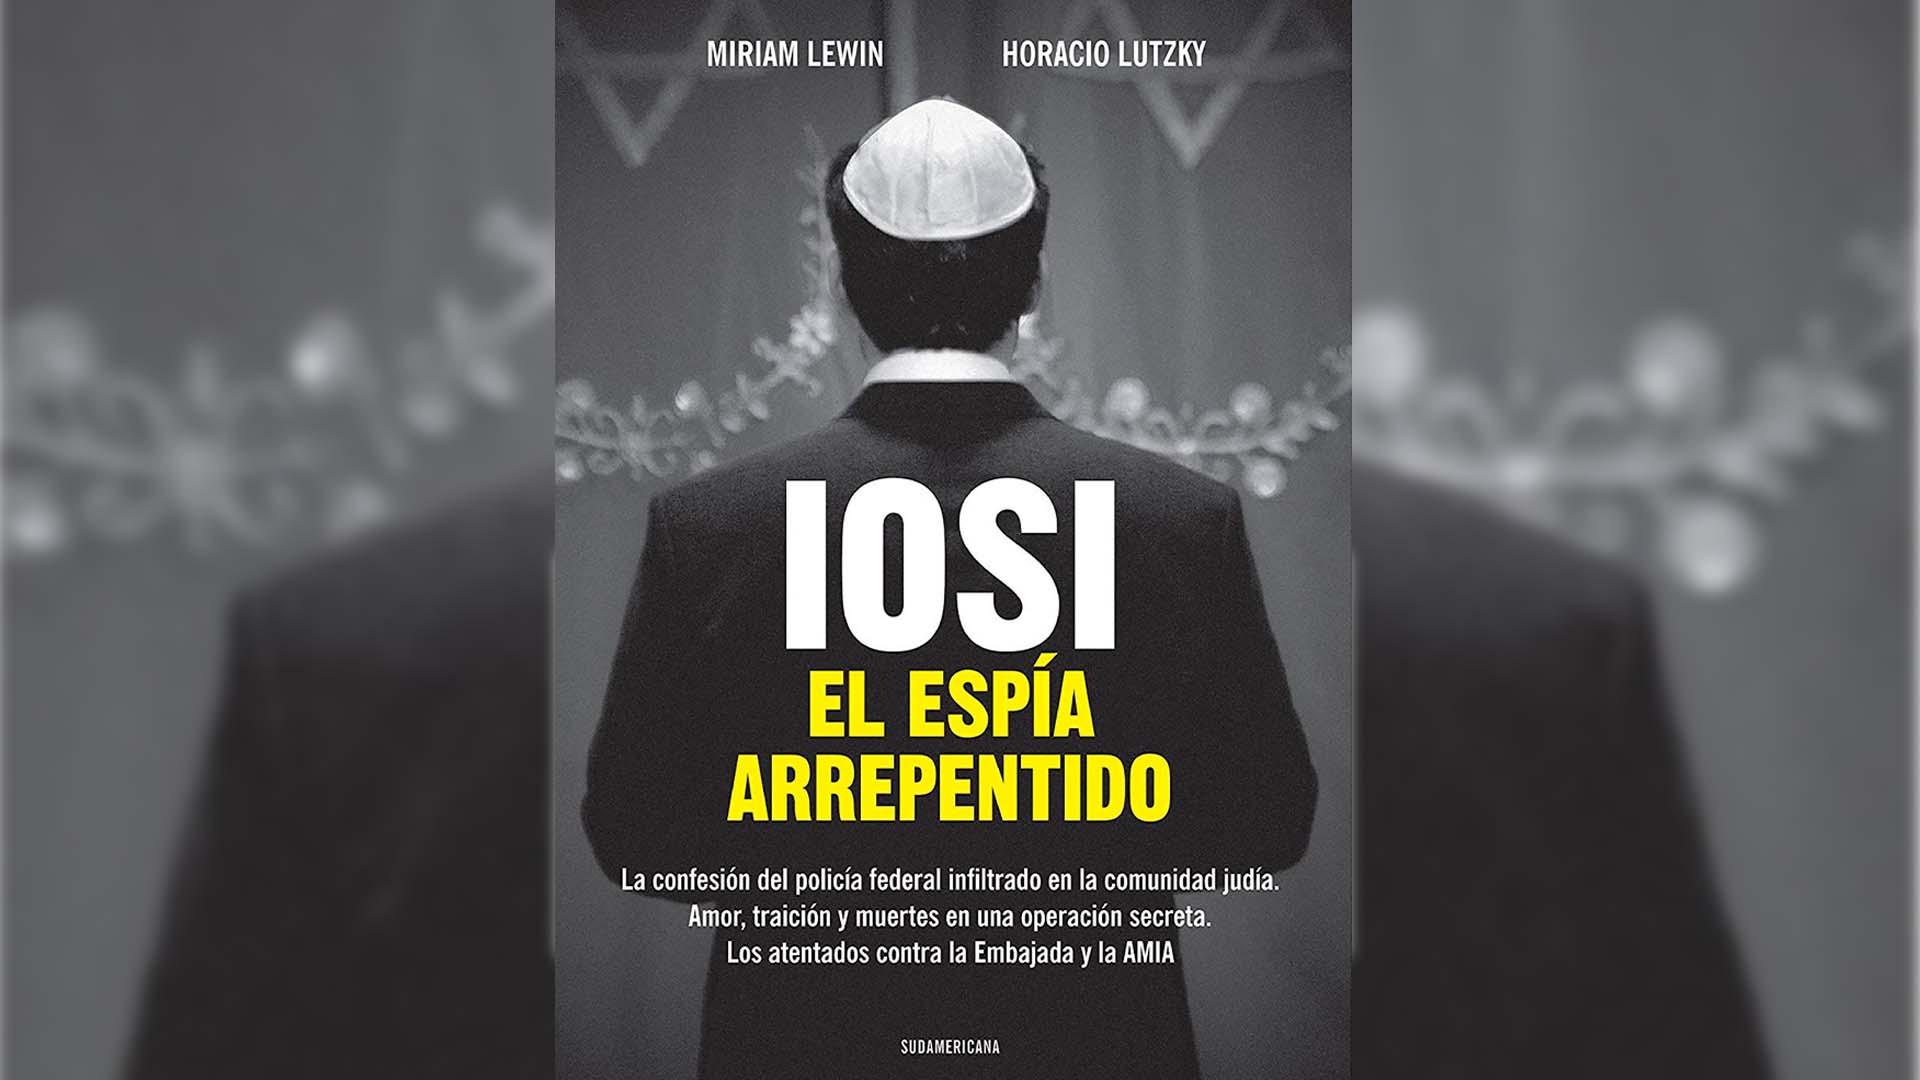 Del libro a la pantalla: cómo surgió la investigación periodística de “Iosi, el espía arrepentido”